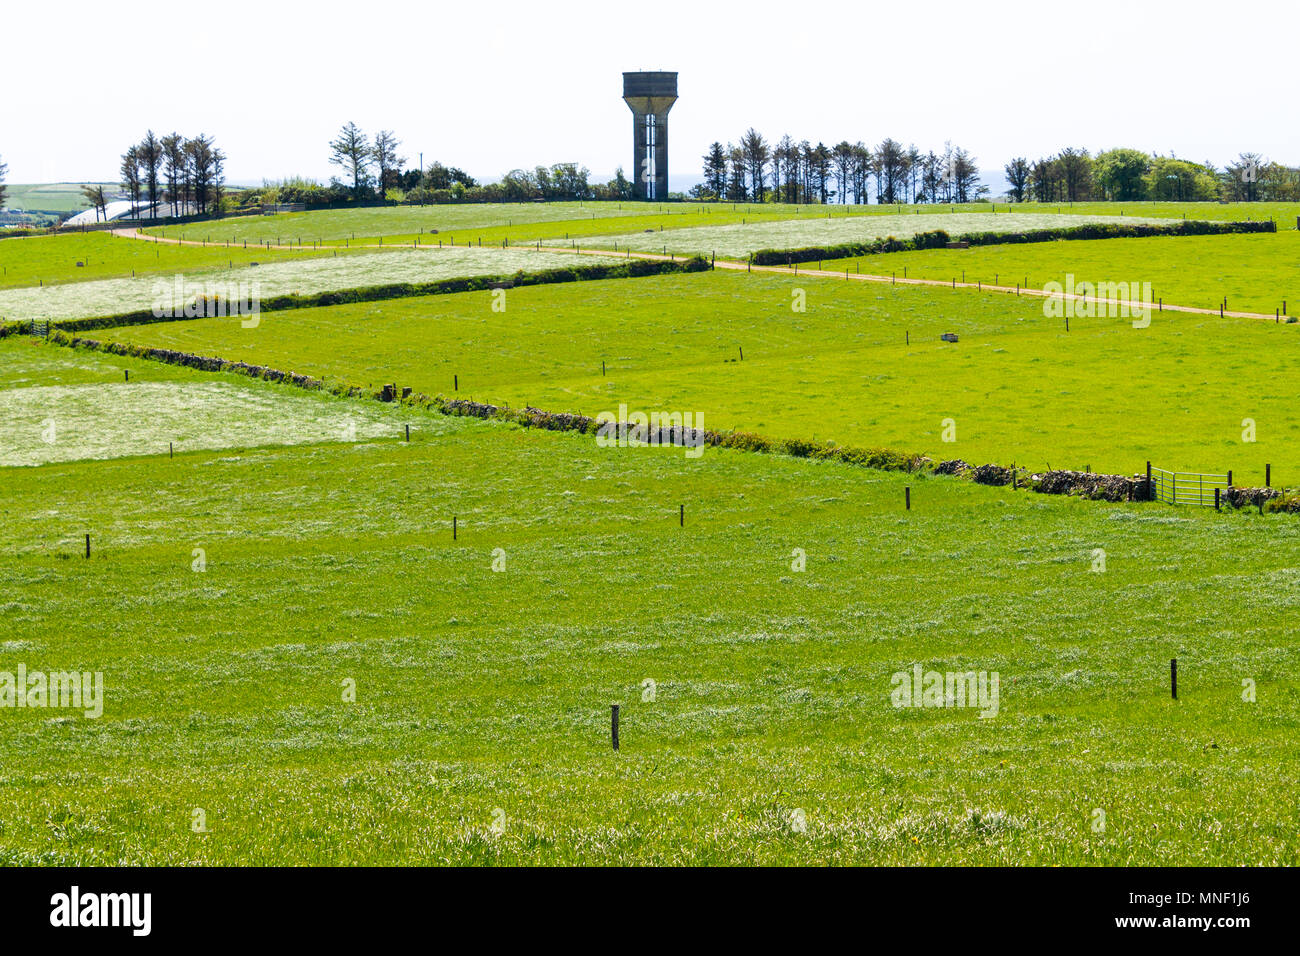 Wasser Lagerung Turm aus Beton am Horizont mit grünen Feldern von Gras durch Hecken in Cork County grenzt, Irland Stockfoto